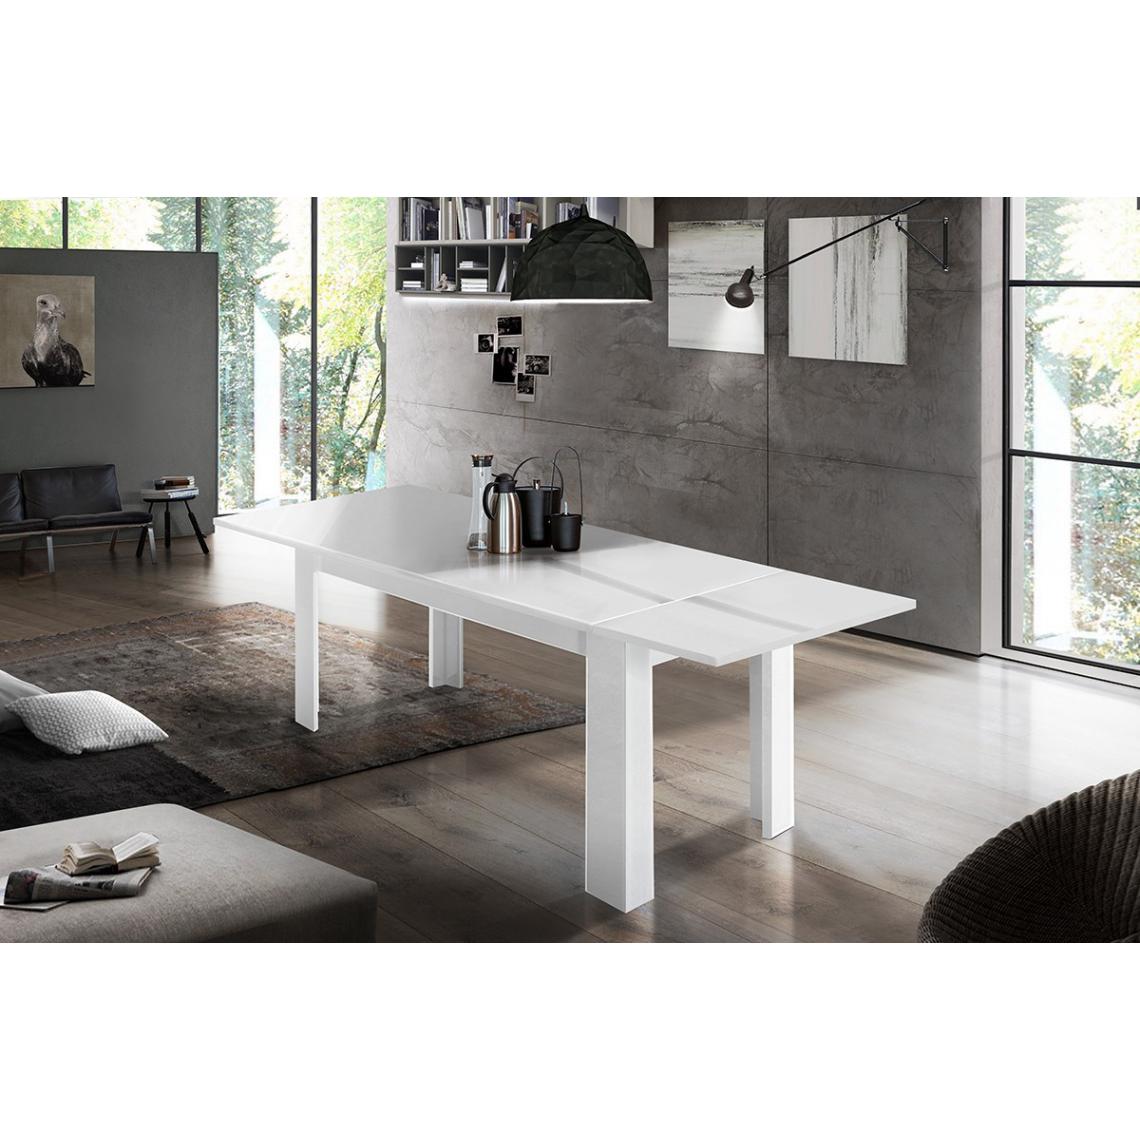 Alter - Table de salle à manger extensible, Made in Italy, Table moderne avec rallonges, Console extensible, 160 / 210x90h75 cm, couleur blanc brillant - Tables à manger